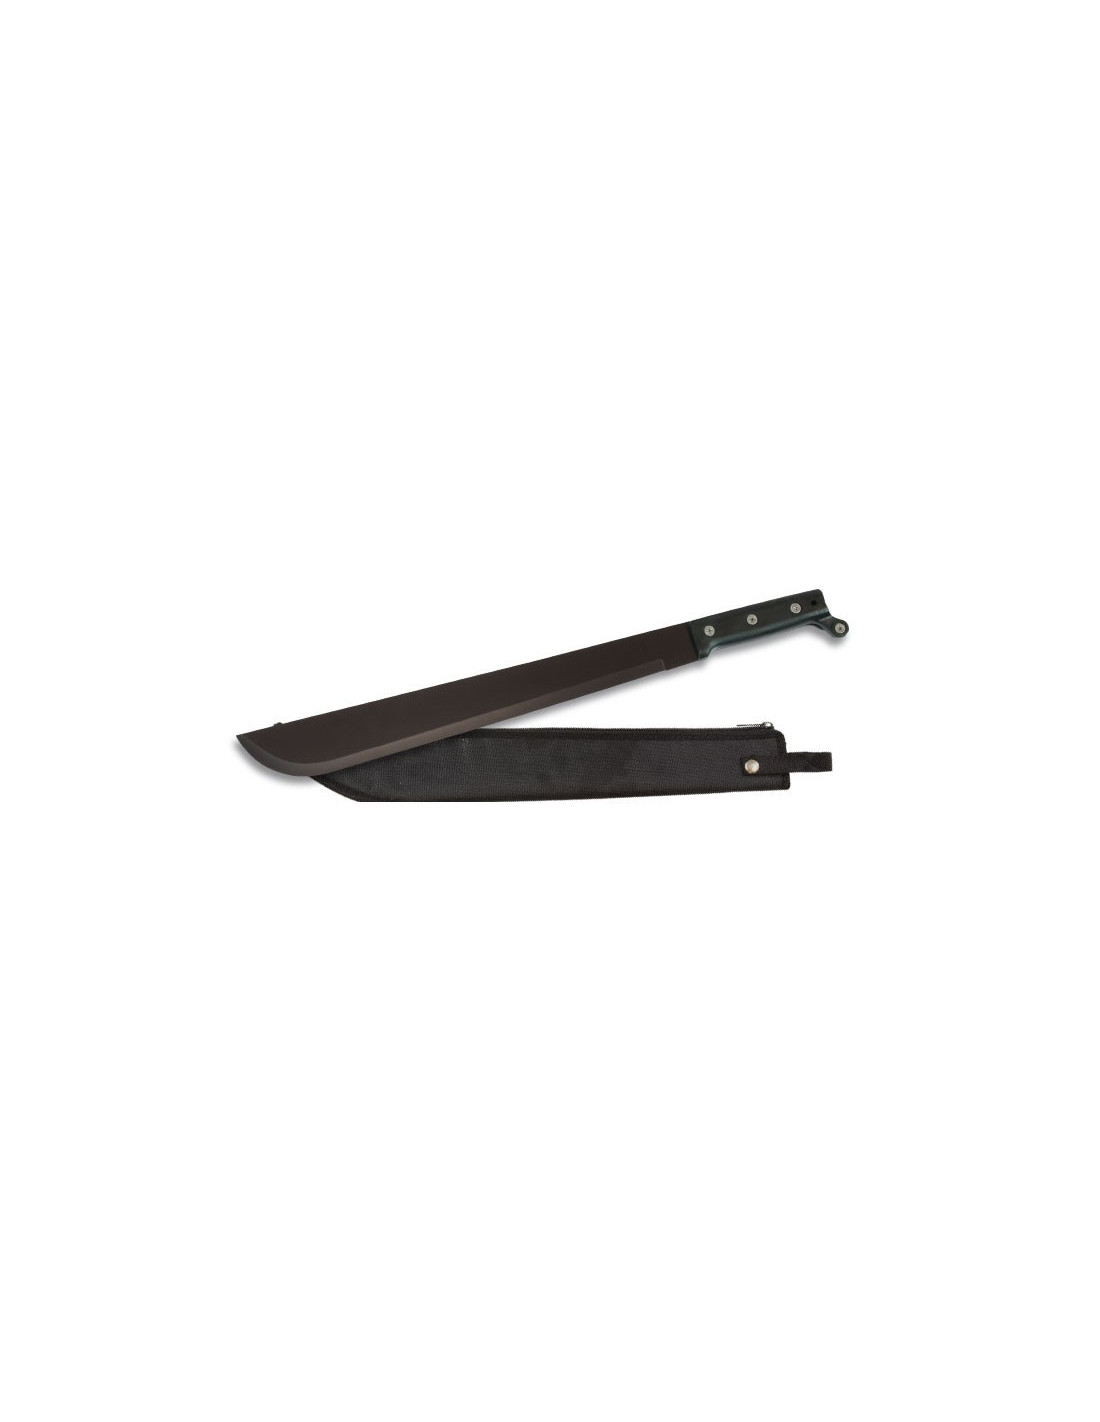 Machete cortacañas grande de 63.5 cm con hoja negra y gris mango